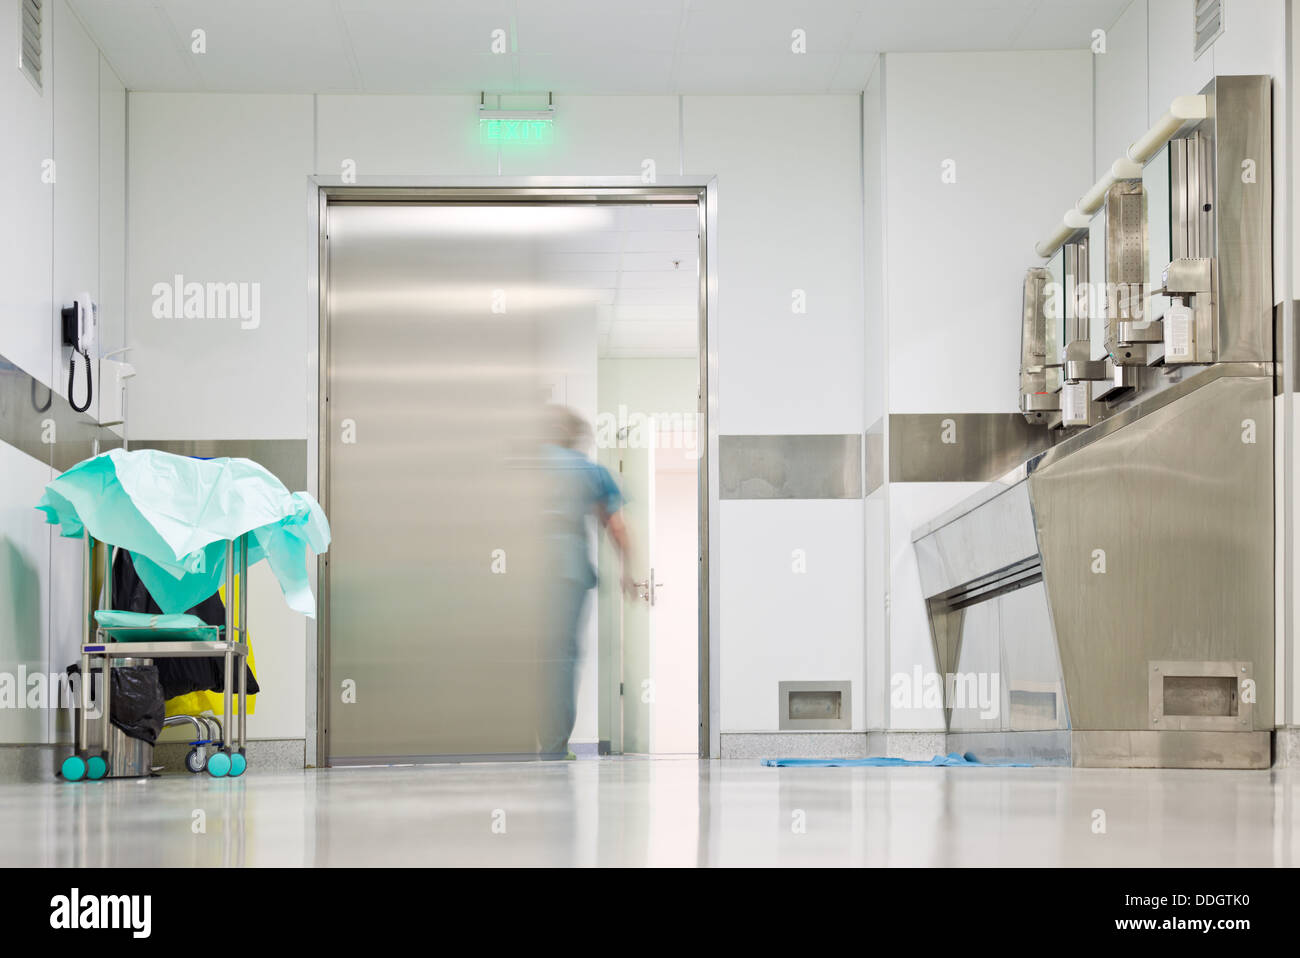 Blurred figure exiting hospital door Stock Photo